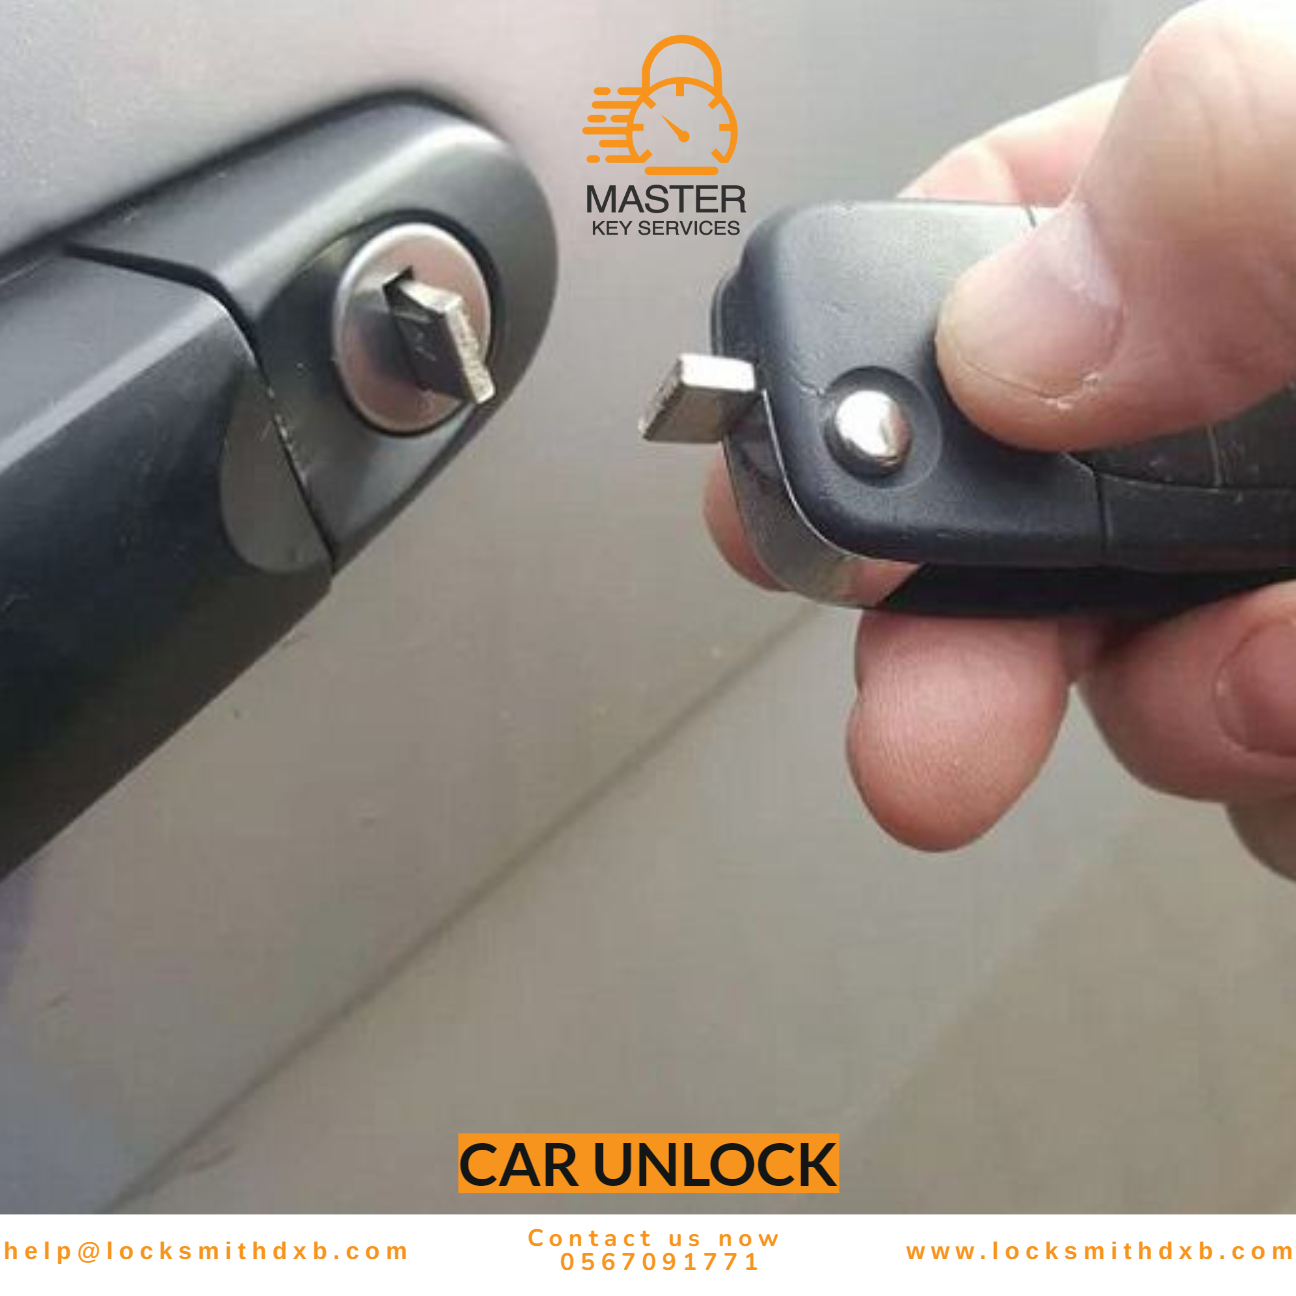 Car unlock